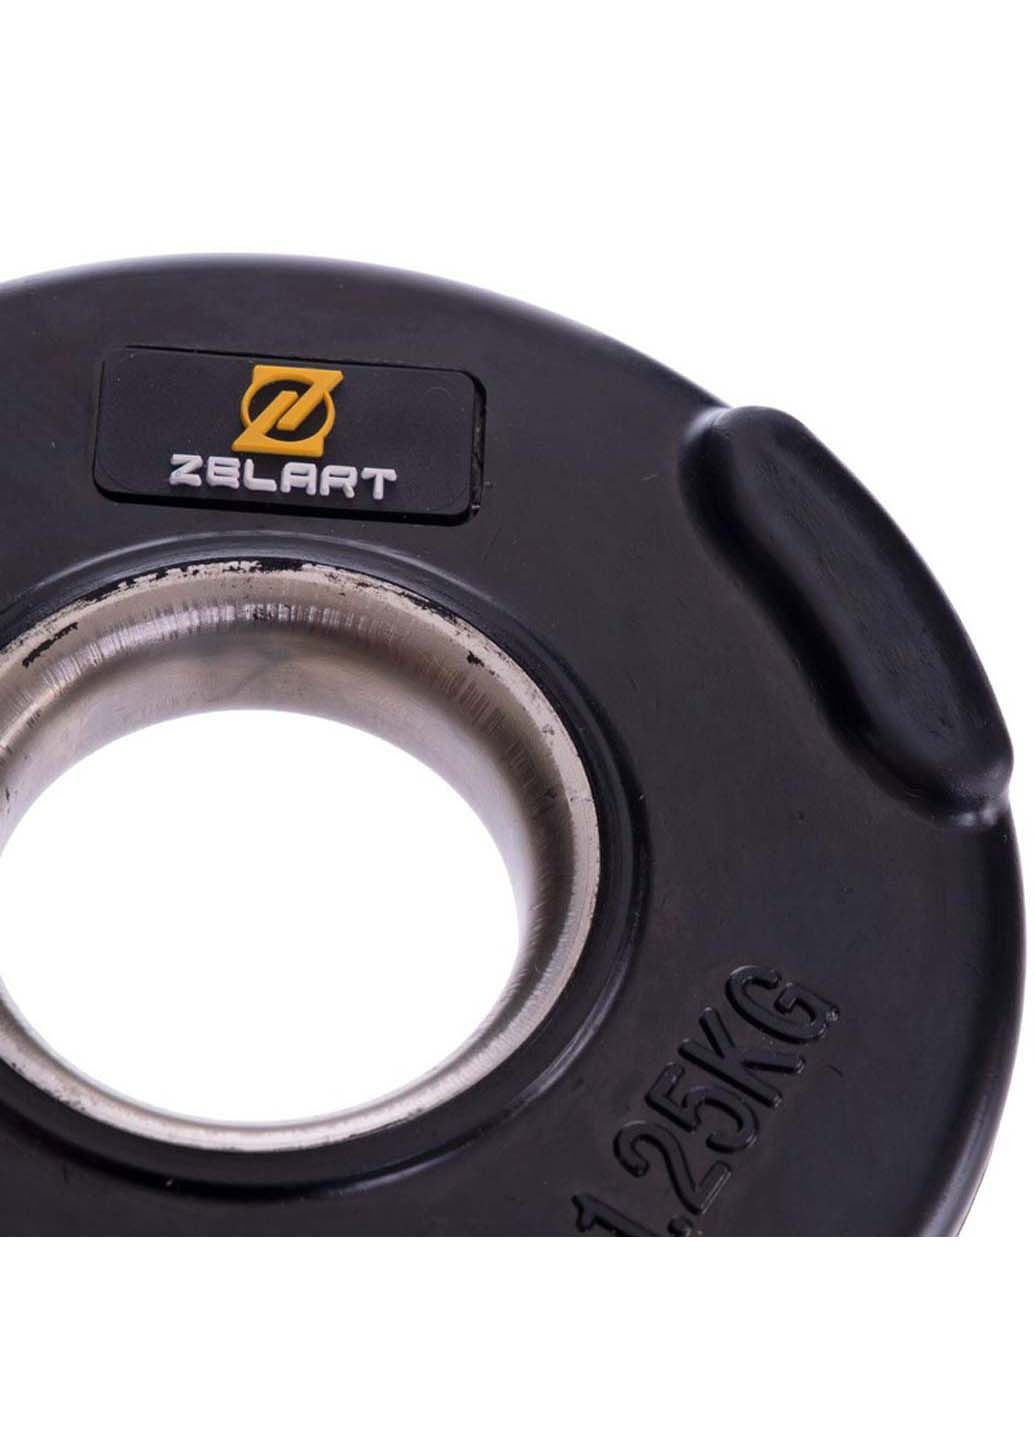 Млинці диски гумові TA-2673 1,25 кг Zelart (286043557)